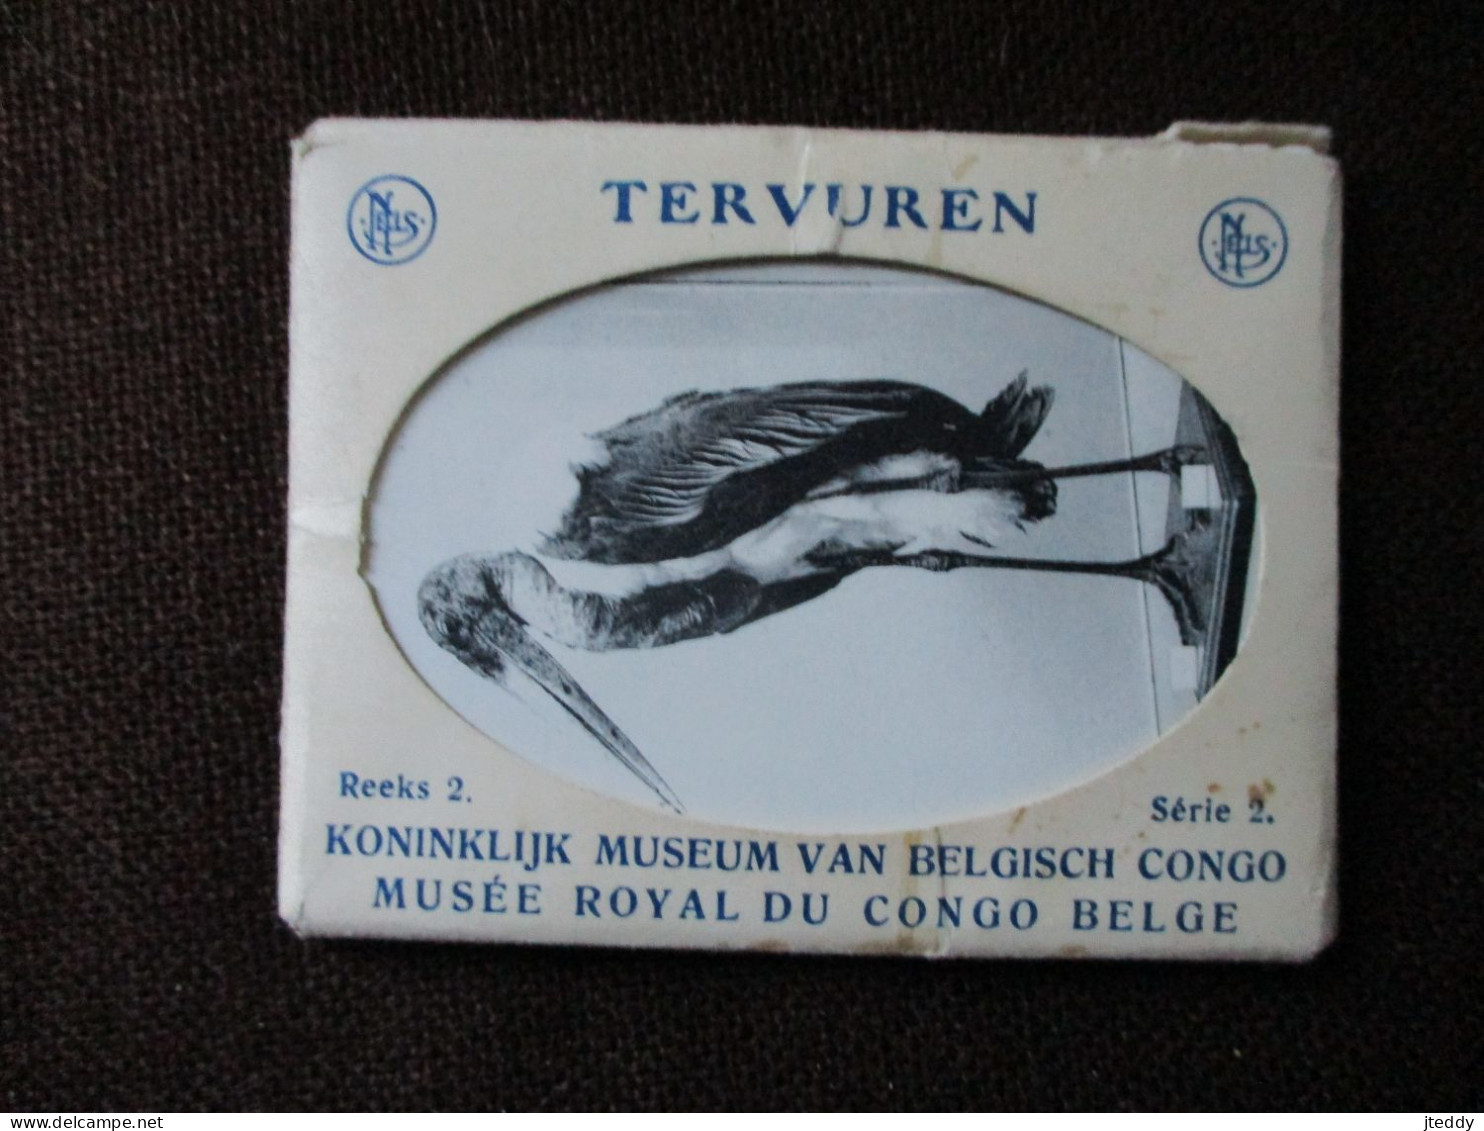 OUD Boekje     Reeks 2      10 Stuks  Wit - Zwart Kaartjes   Kon . Museum Van BELG. CONGO   TERVUREN - Musea